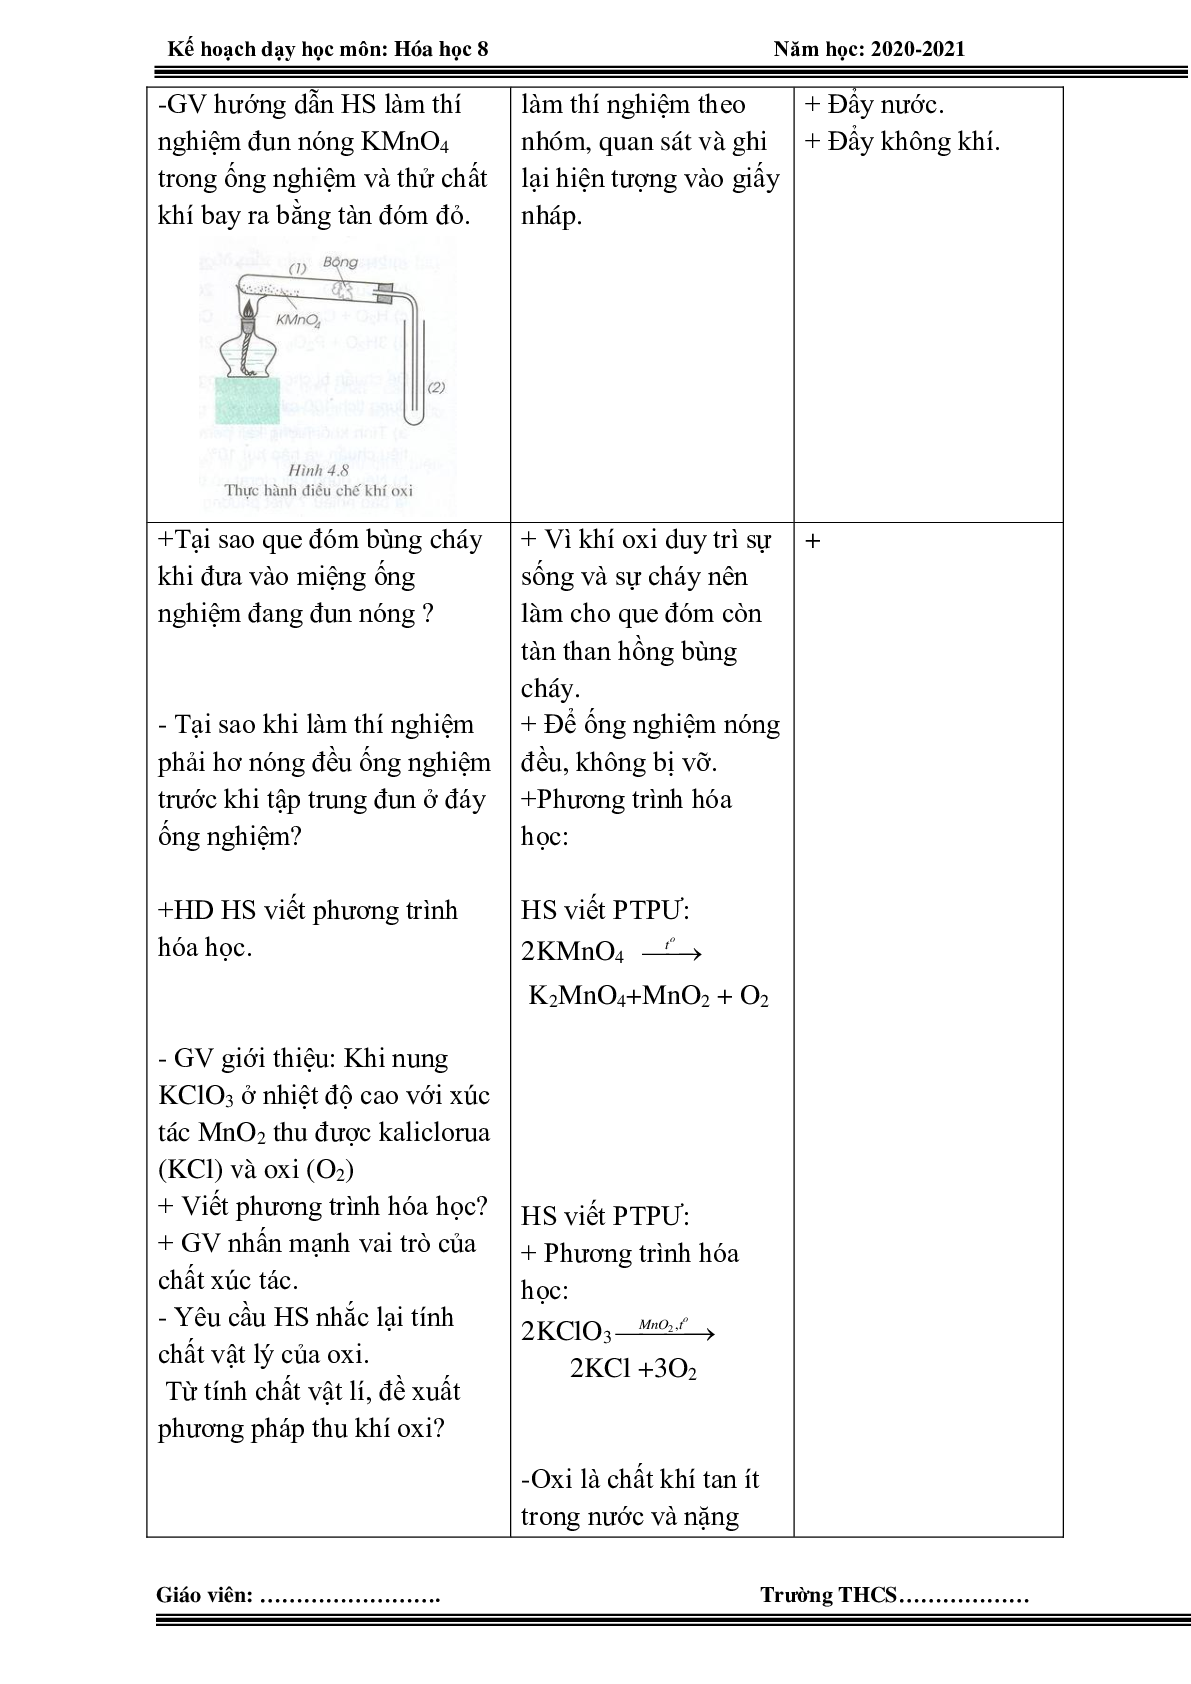 Giáo án hóa học 8 HK 2 theo công văn 5512 mới nhất (trang 10)